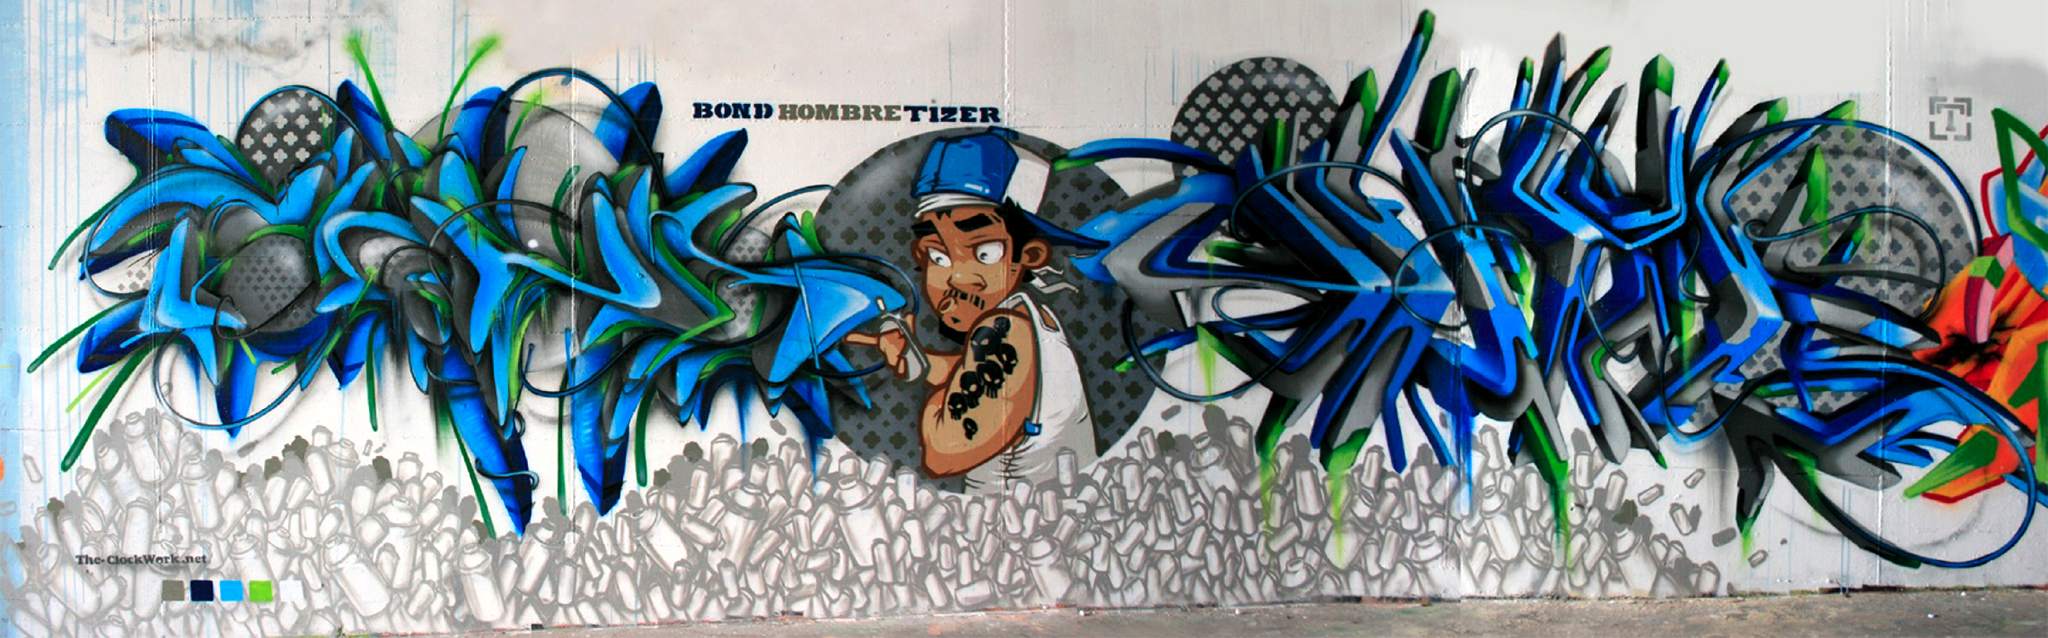 http://graffiti.org/clockwork/bond_hombre_tizer_meetingofstyles_wiesbaden2007.jpg